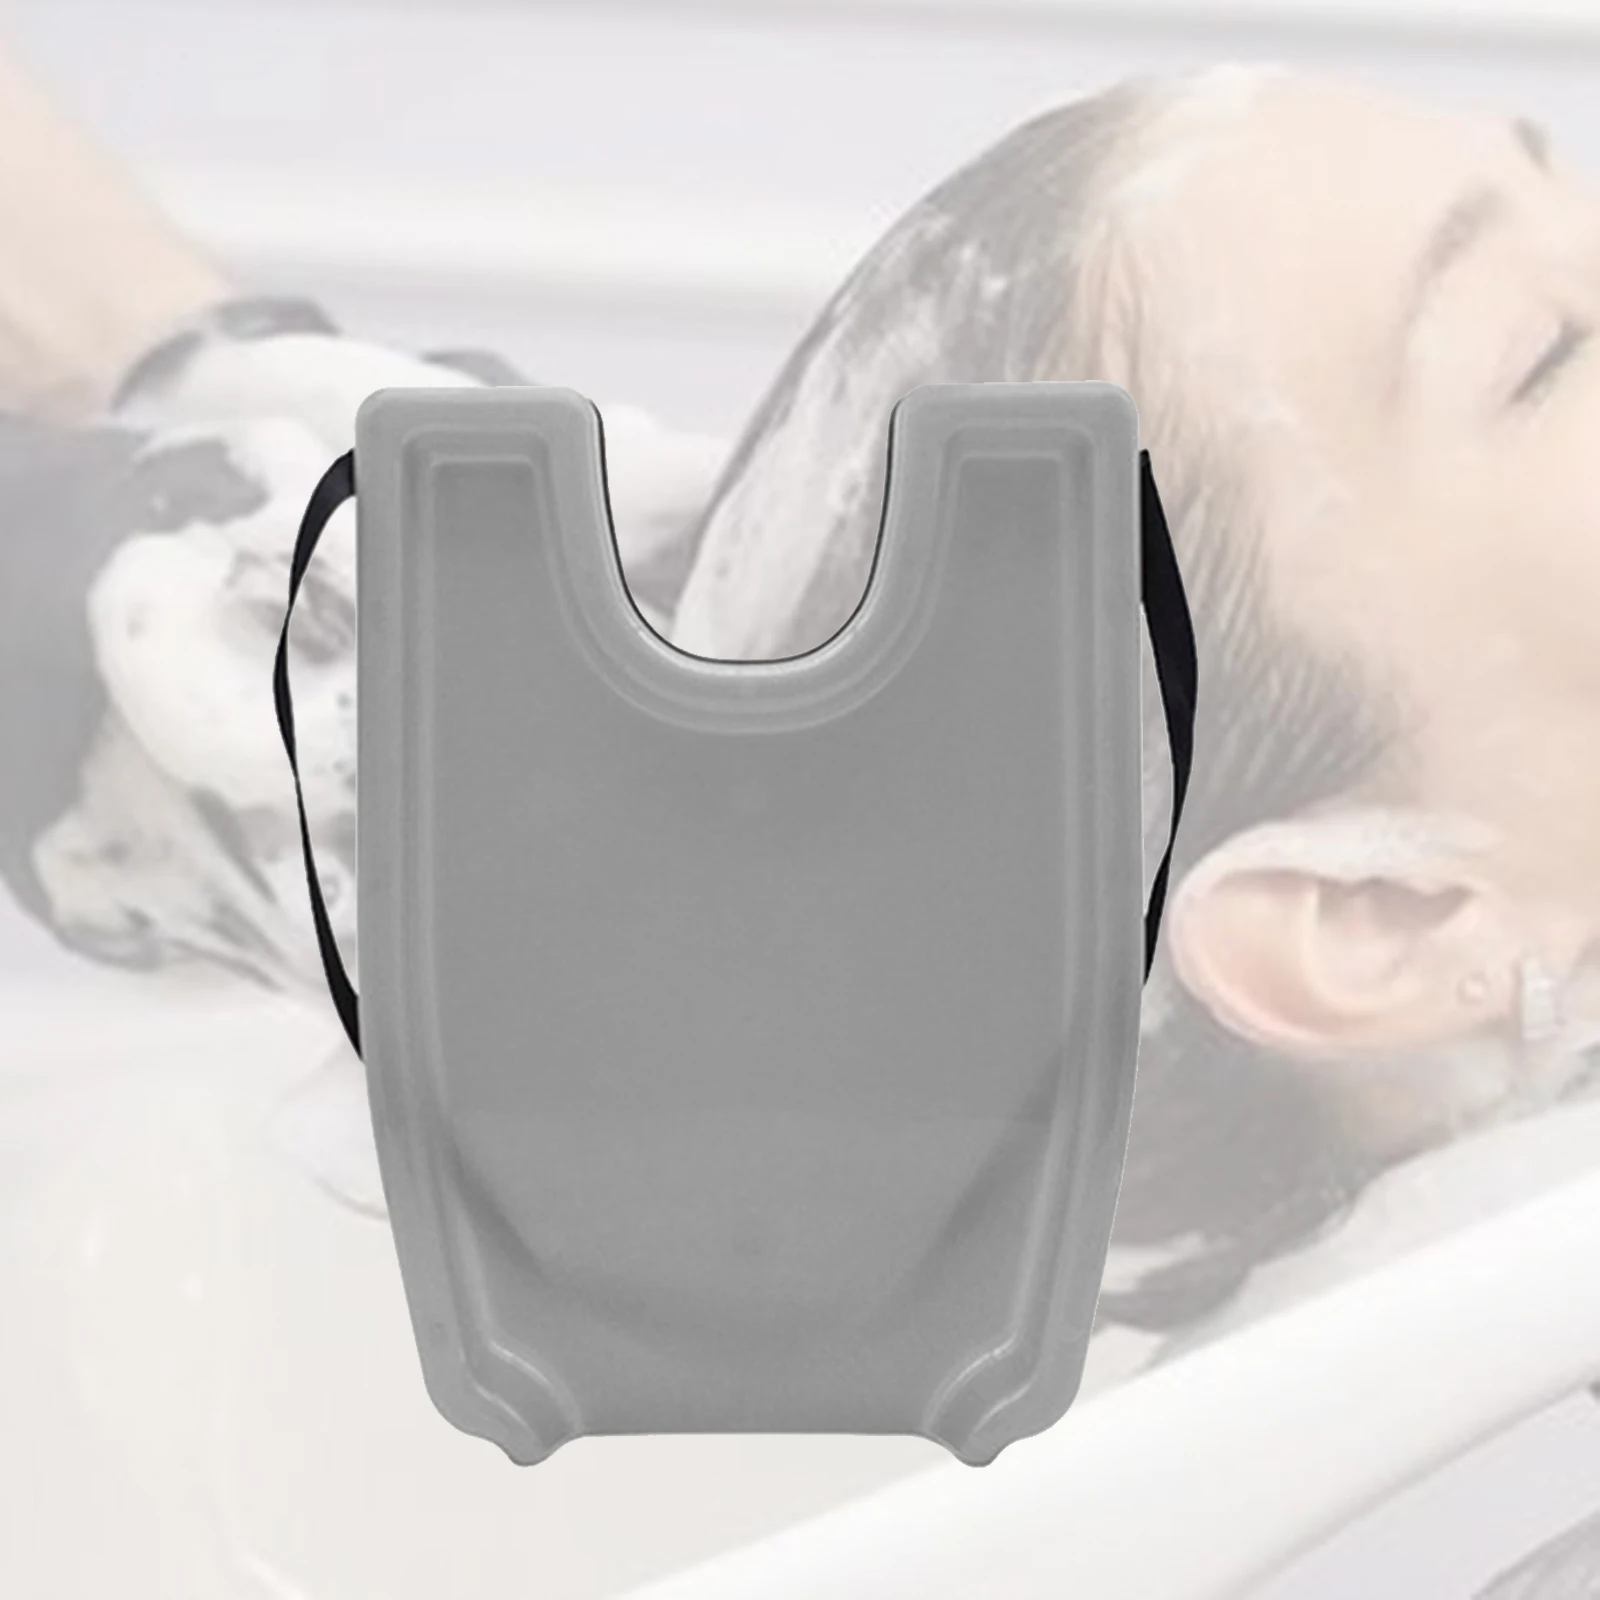 Portable Hair Shampoo Rinse Backwash Washing Tray Sink, Safety Contoured, Raised 